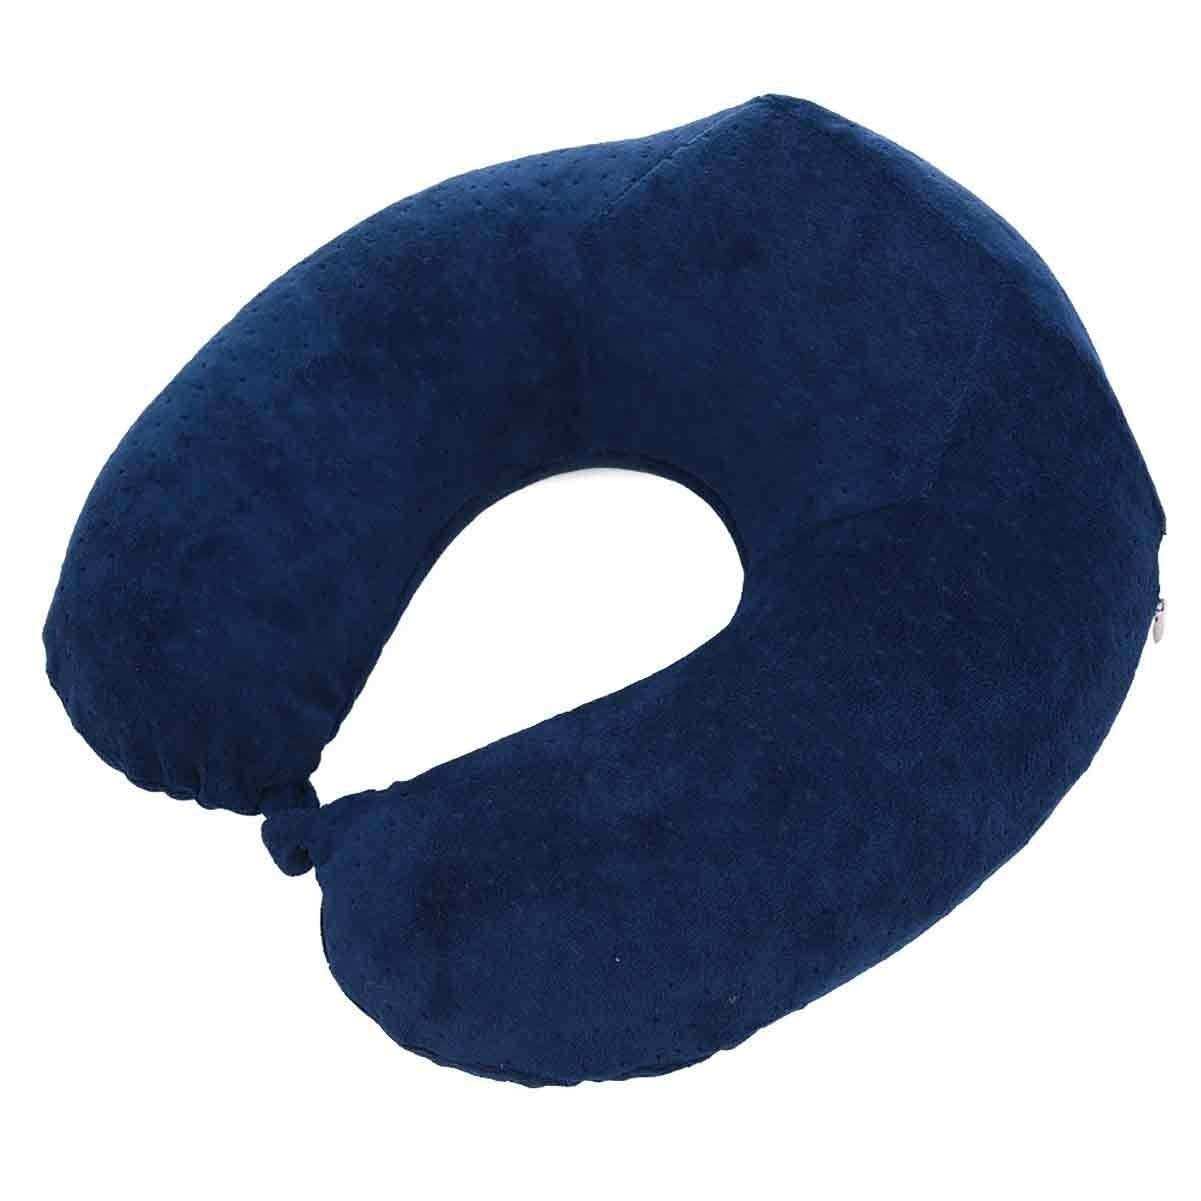 U-Shape Neck Dotted Pillow Memory Foam Travel Pillow Best Airplane Travel Pillow for Men & Women - Dark Blue